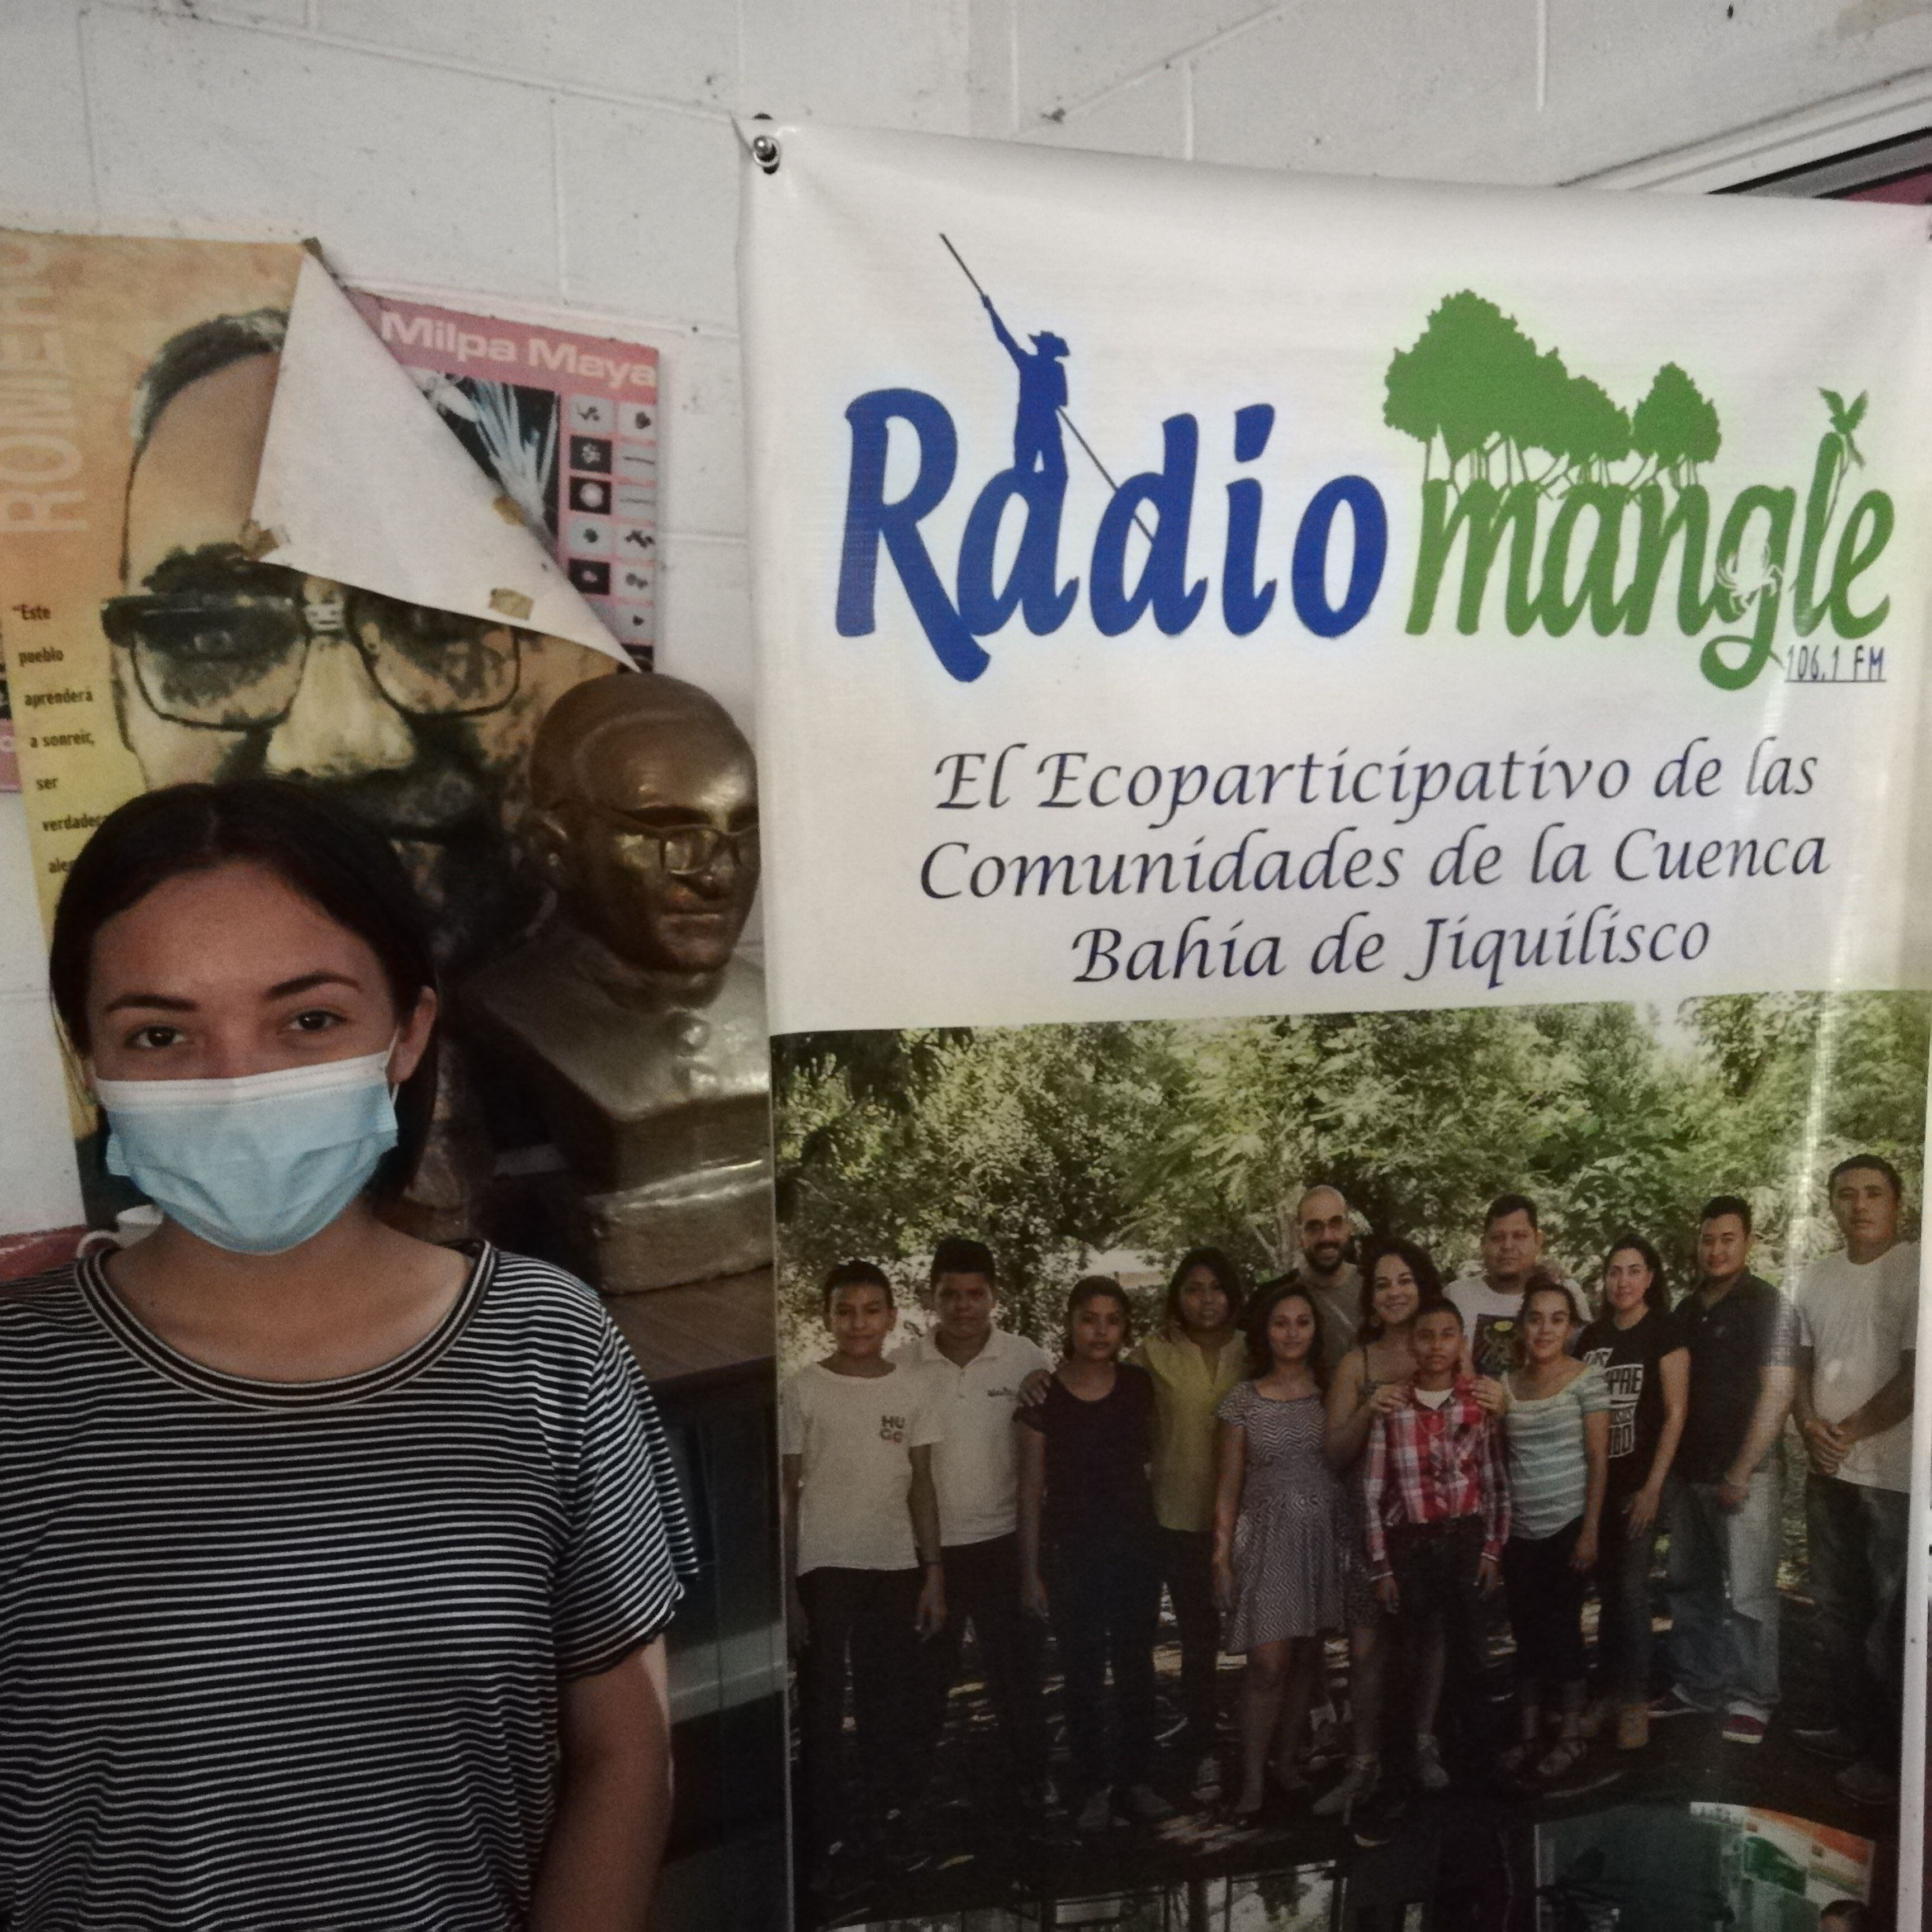 Wendy Hernández explica frente a un busto del Padre Romero que la radio sirve como instrumento en la comunidad para denunciar crímenes ambientales, como el robo de tierras.